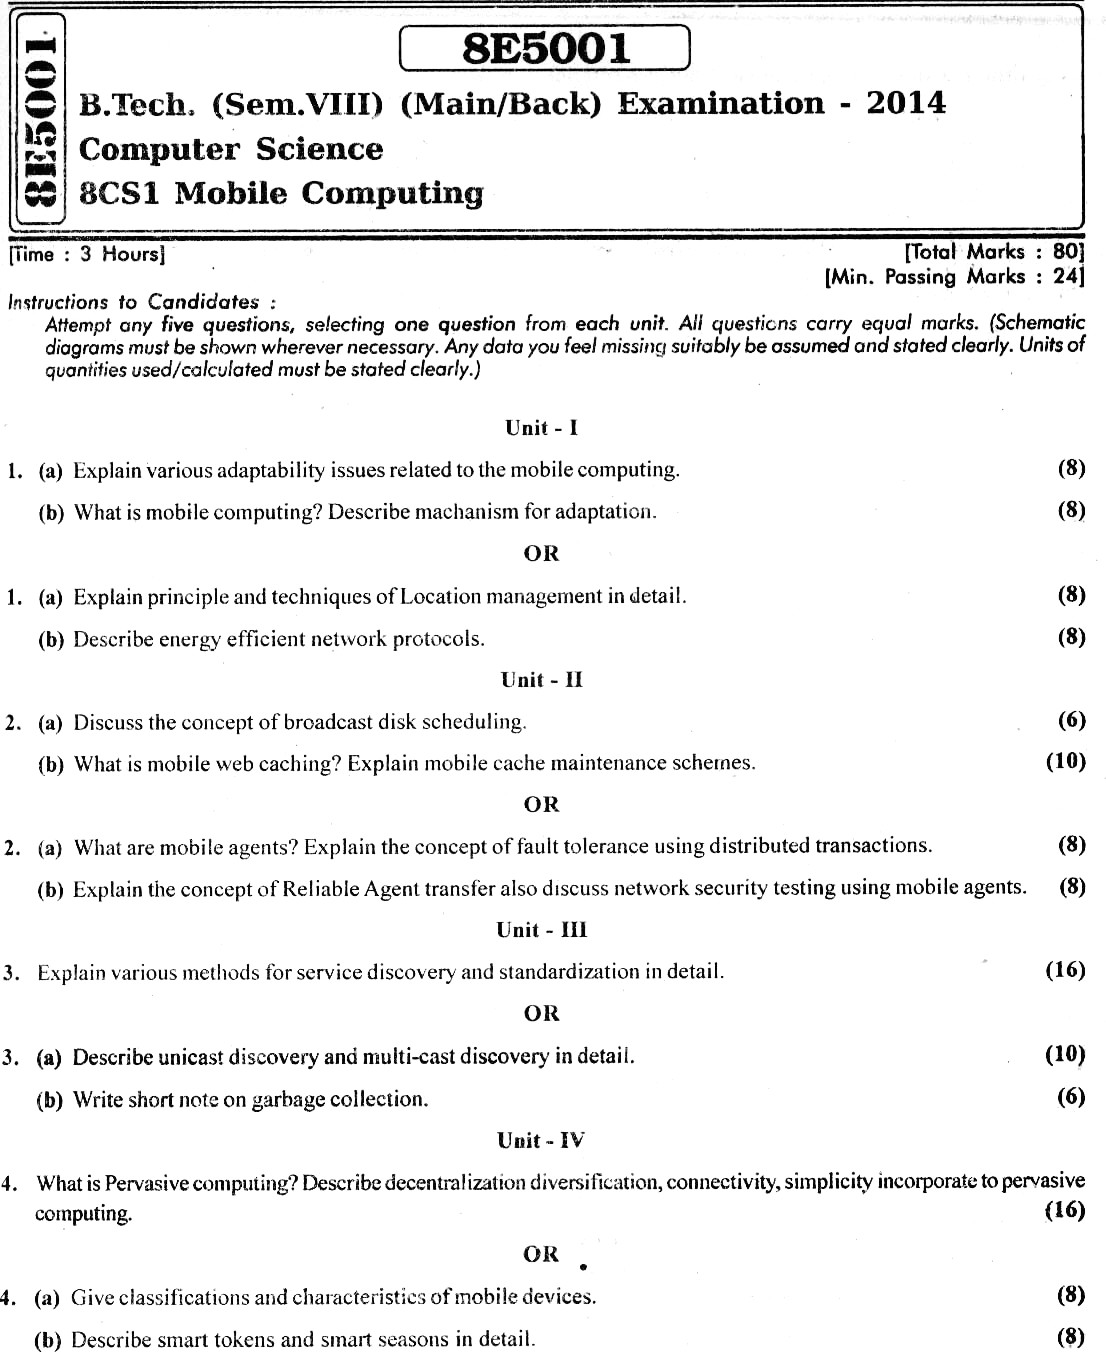 8E5001 Mobile Computing Paper